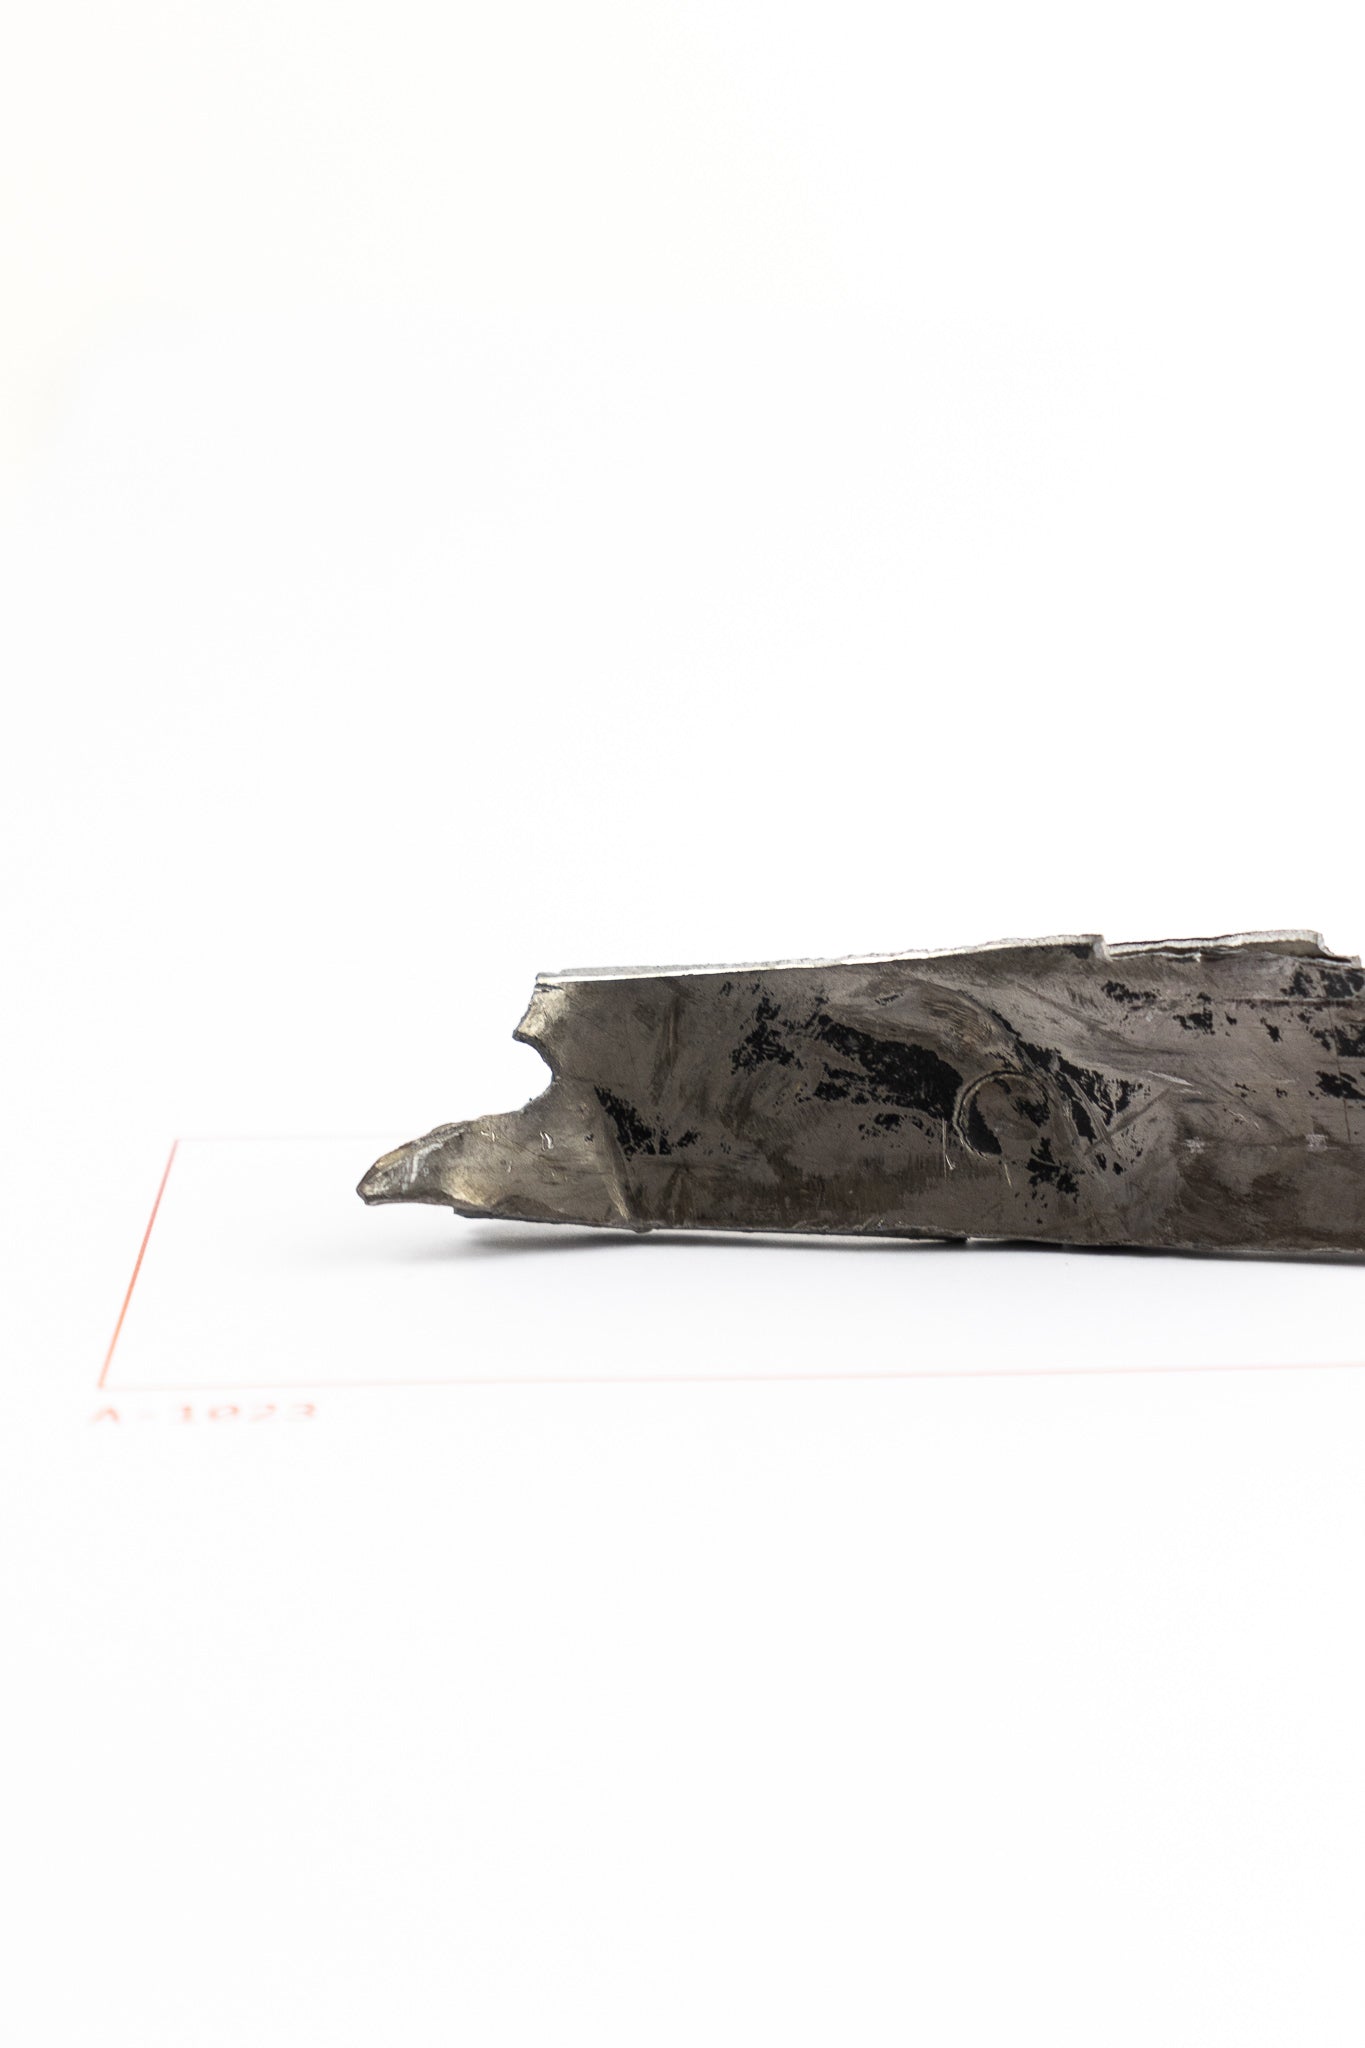 SR-71 Blackbird Wreckage (Item # A-1023)